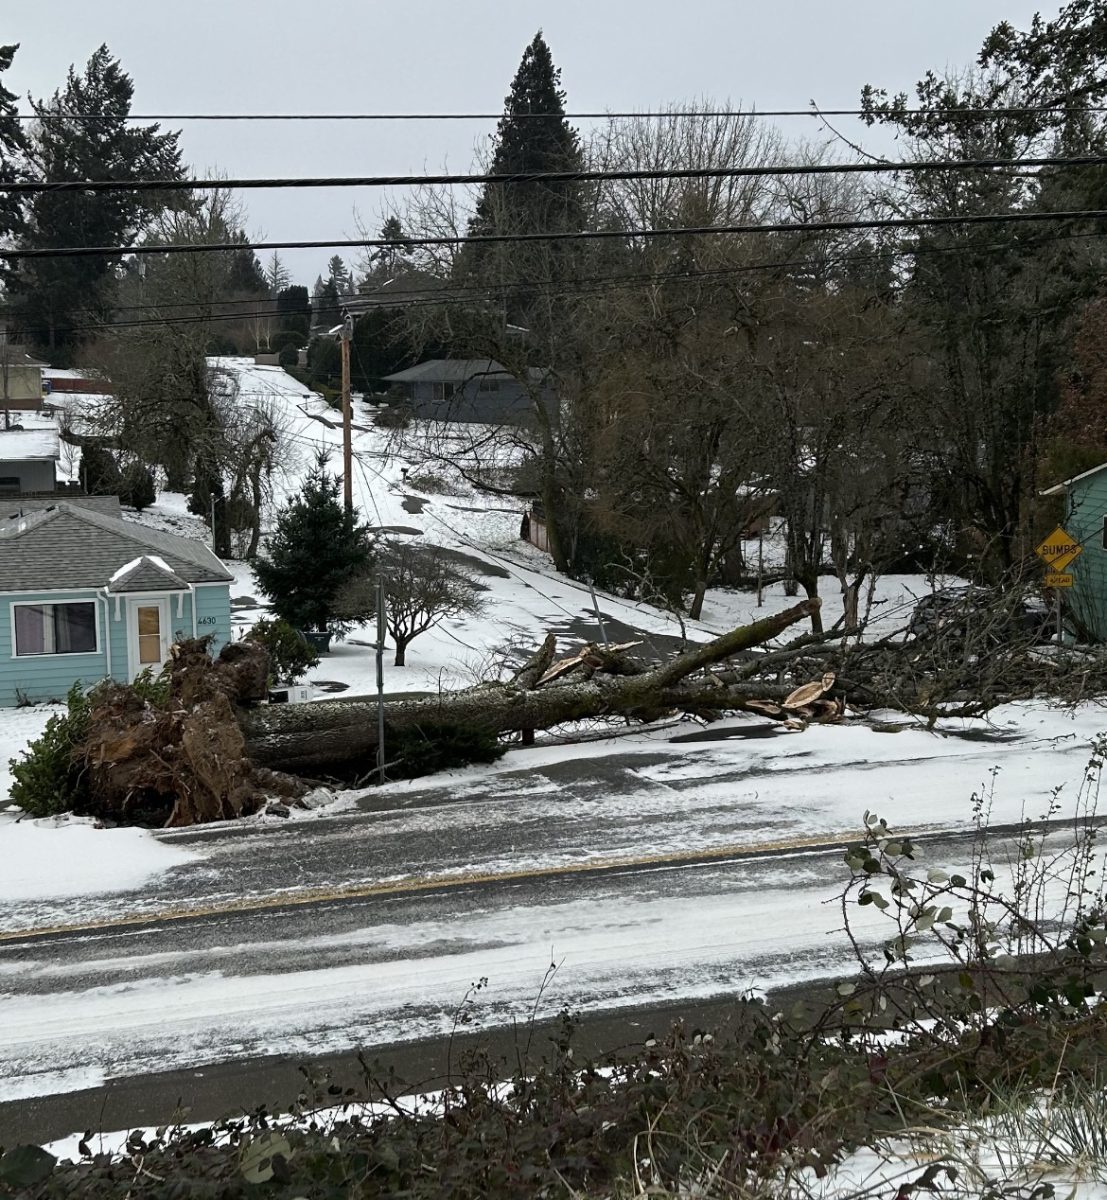 Portlandapocalypse: The ice storm that distroyed Portland